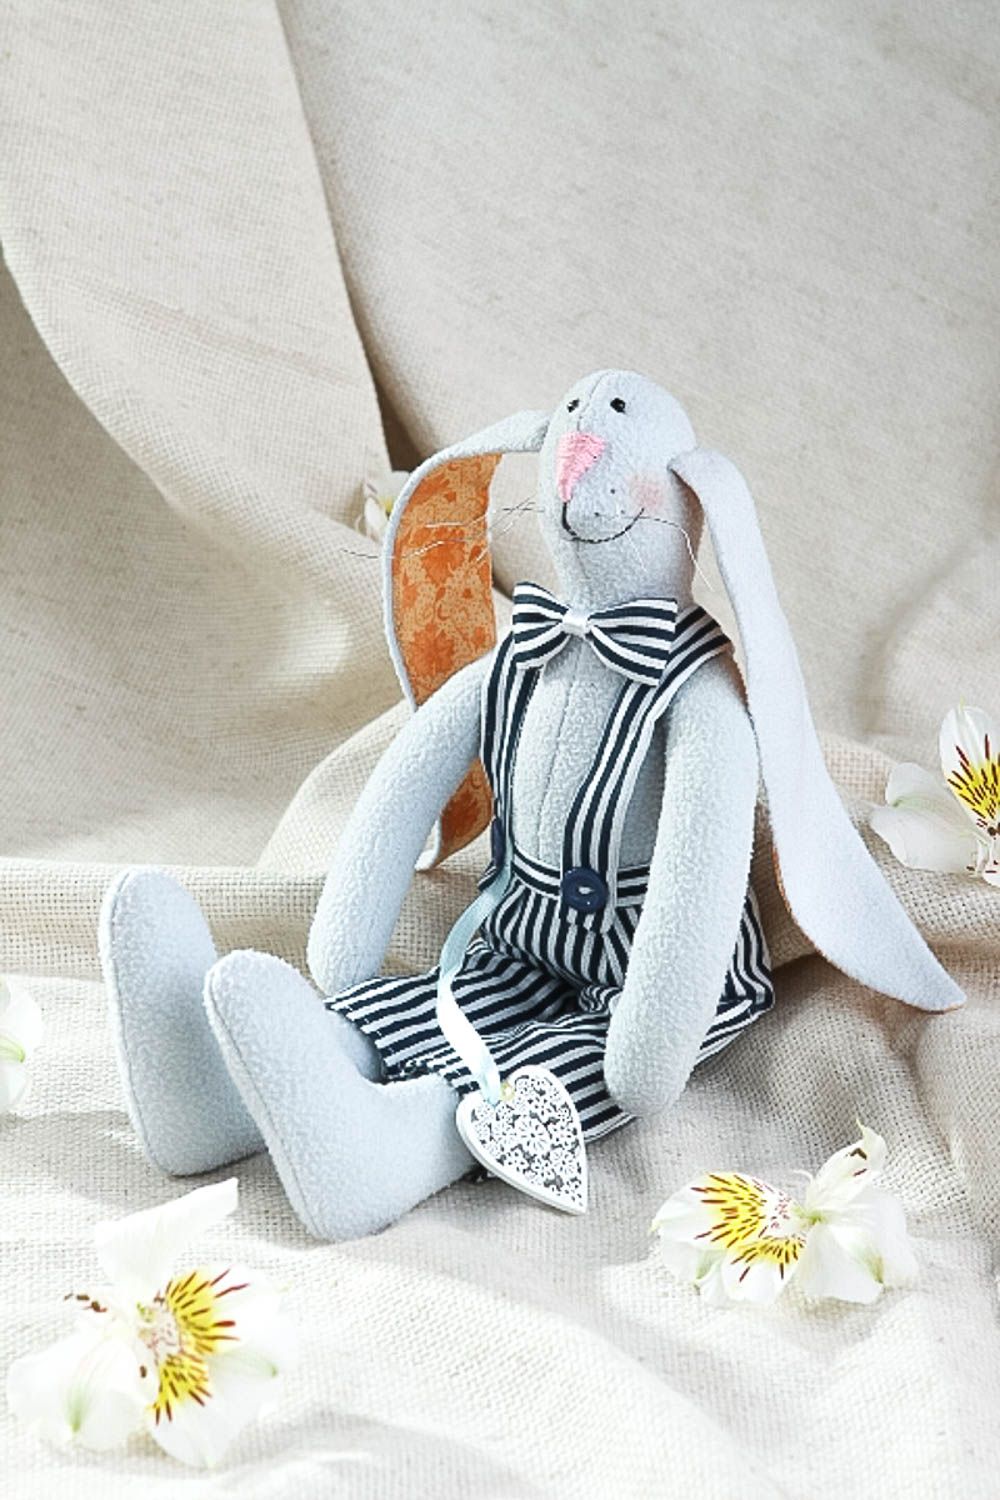 Интерьерная игрушка ручной работы игрушка-заяц в костюме авторская игрушка.  фото 1